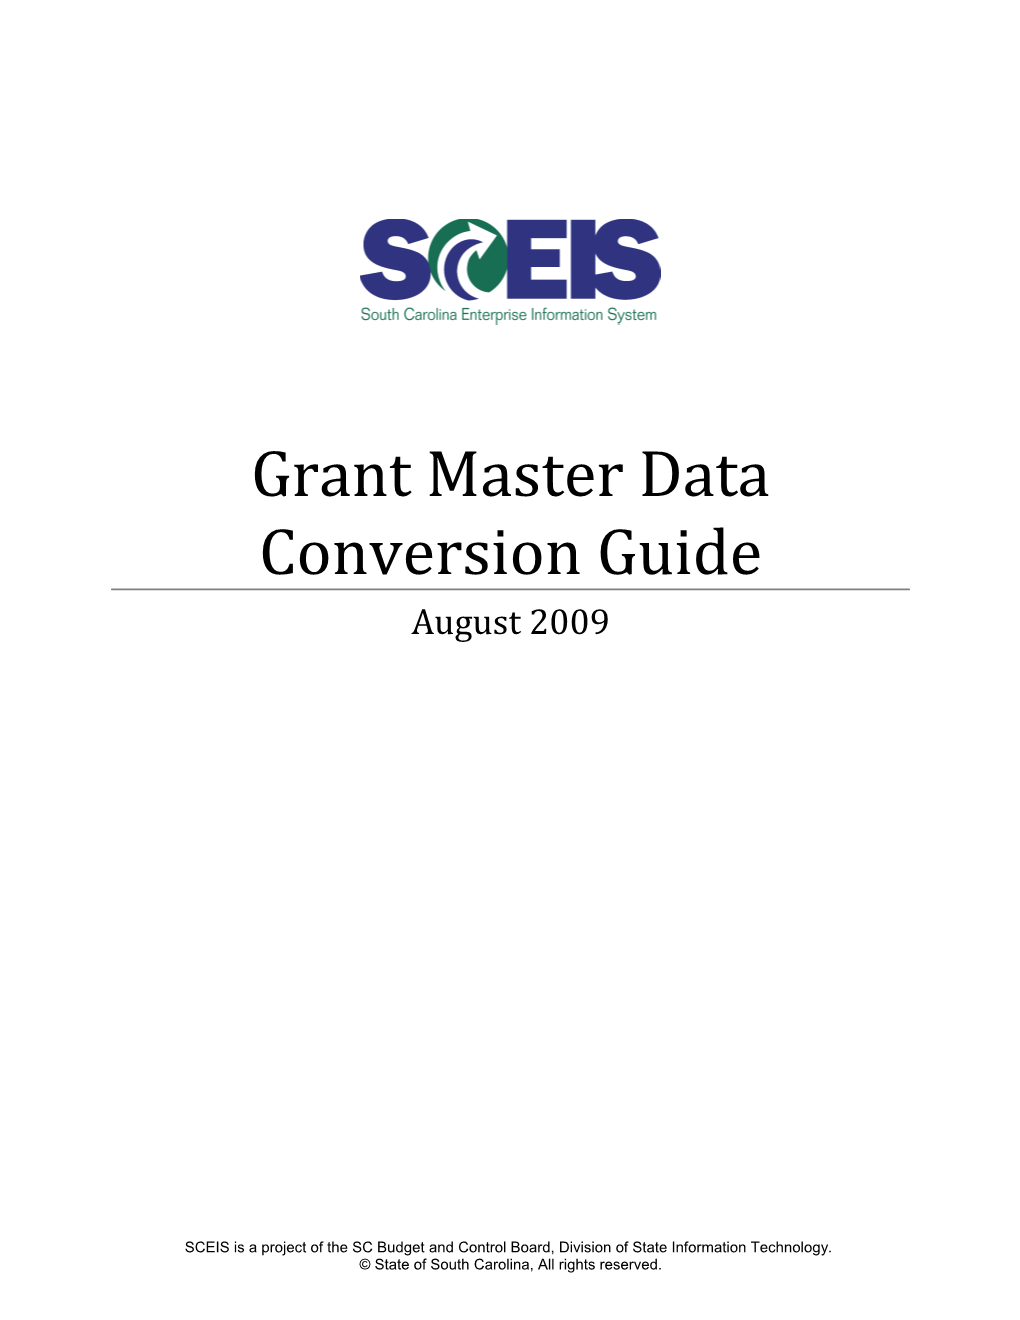 Grant Master Data Conversion Guide